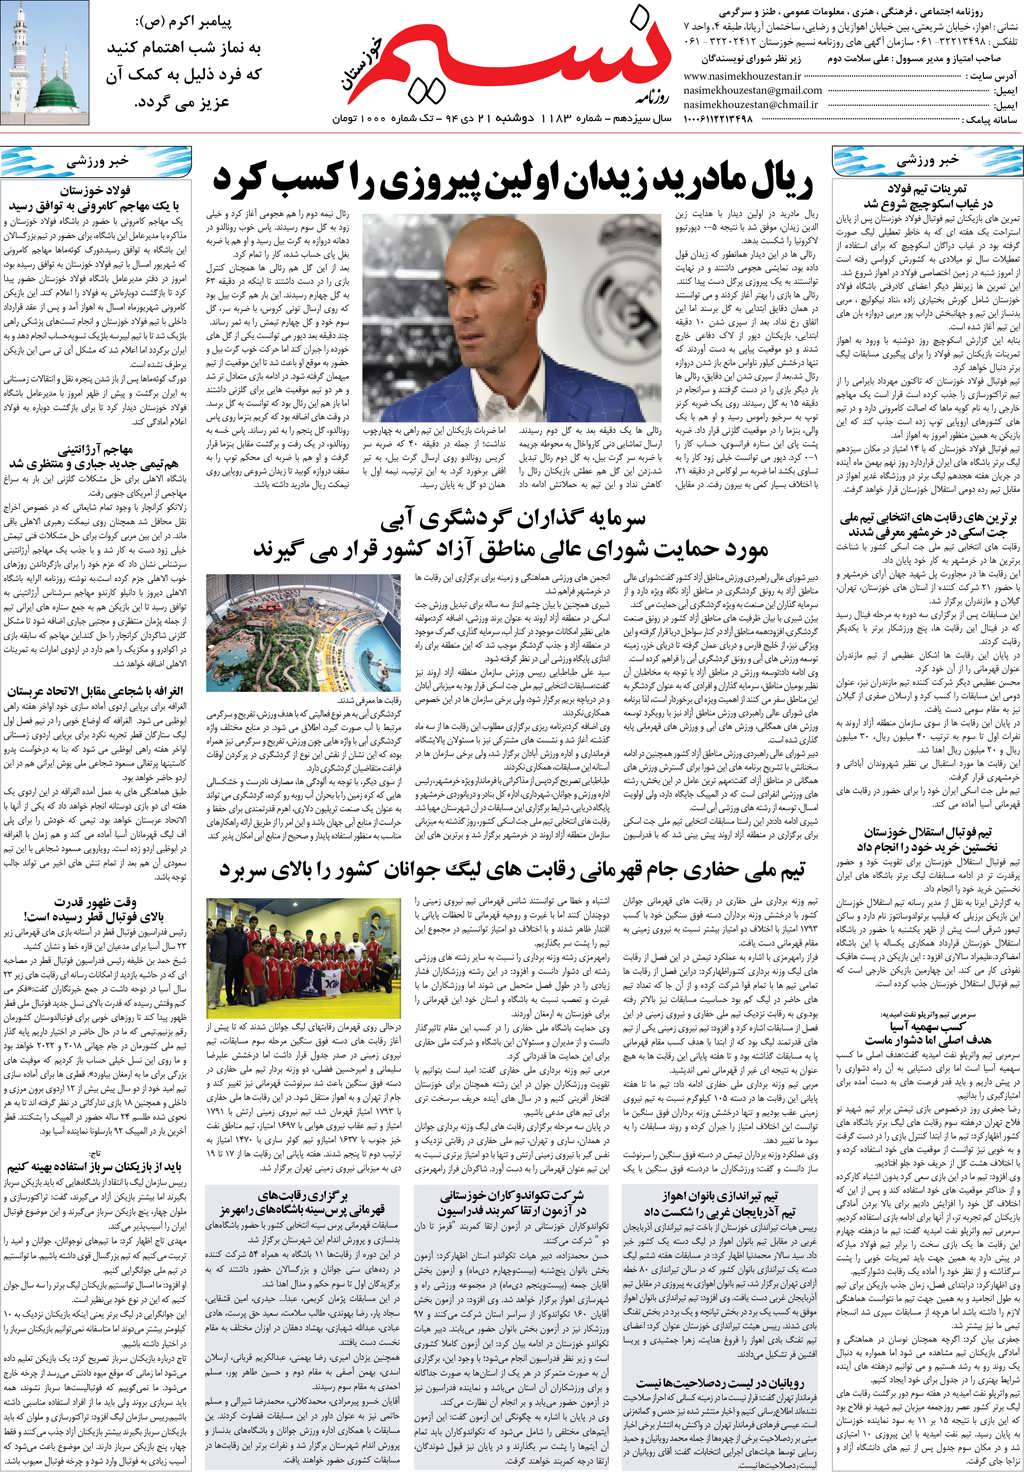 صفحه آخر روزنامه نسیم شماره 1183